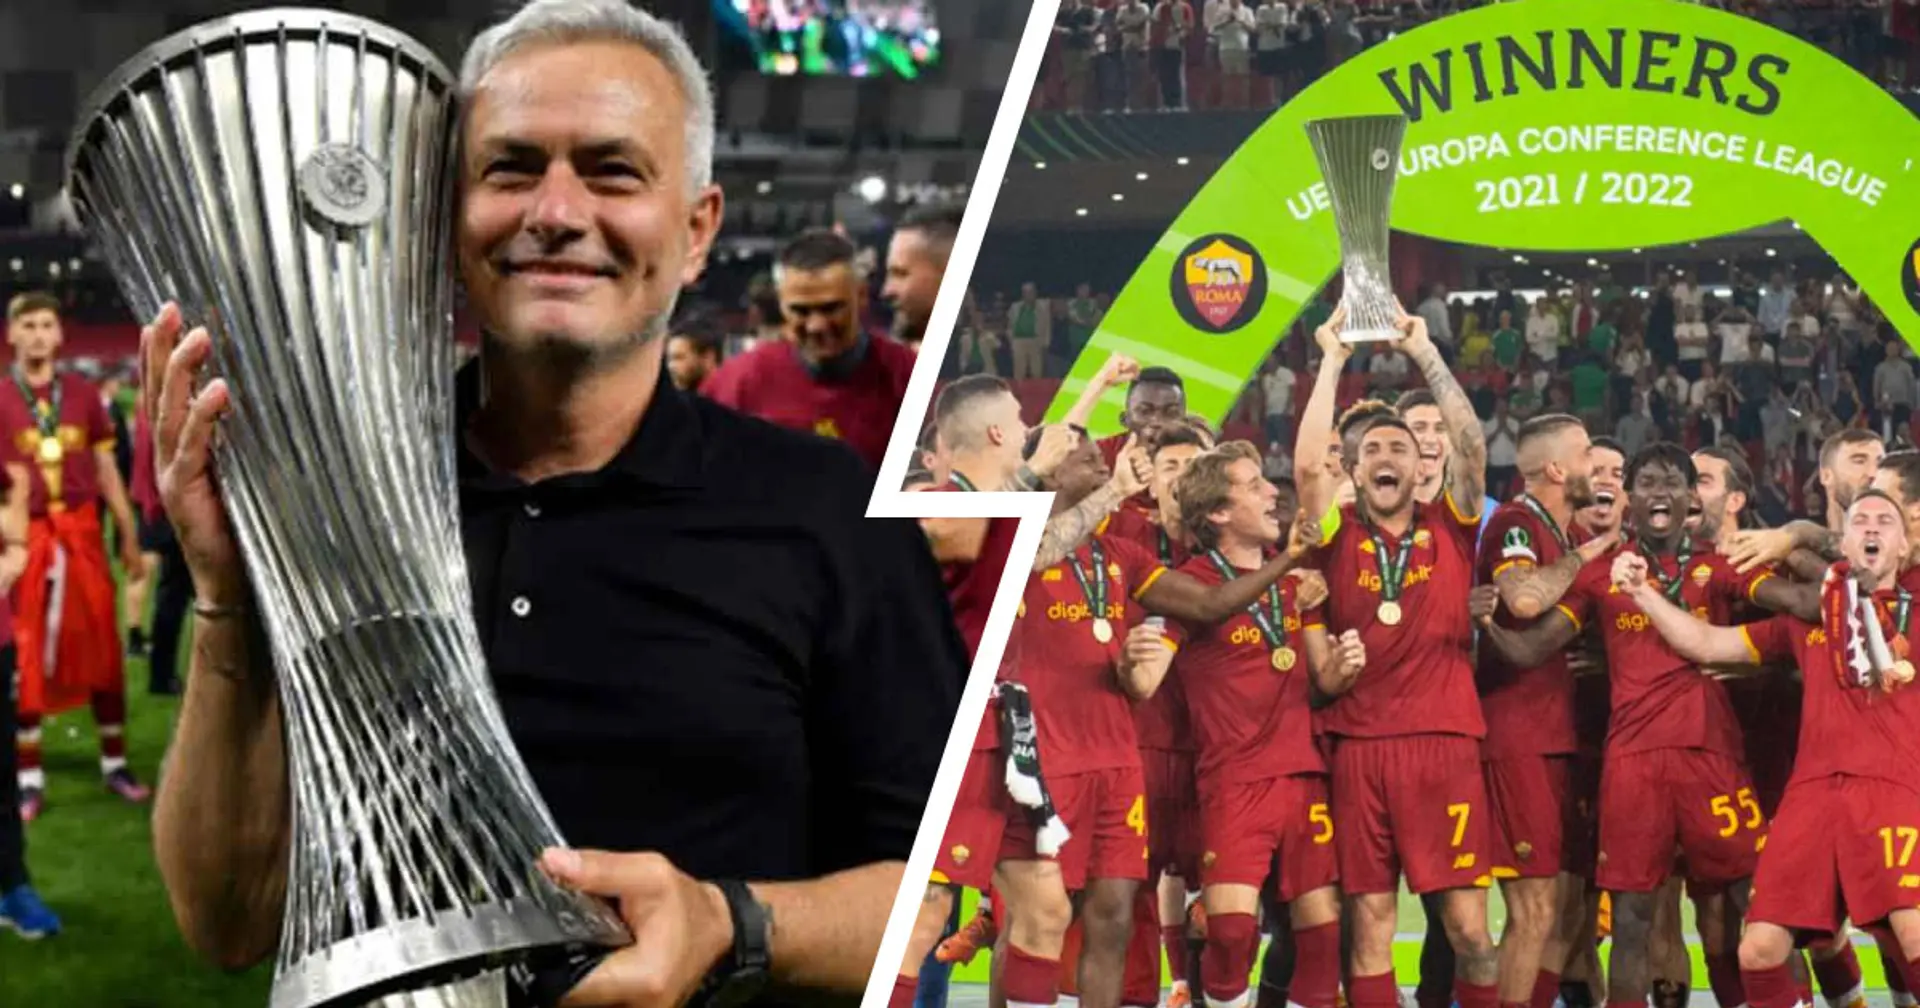 Jose Mourinho achieves rare feat as AS Roma win inaugural UEFA Europa Conference League